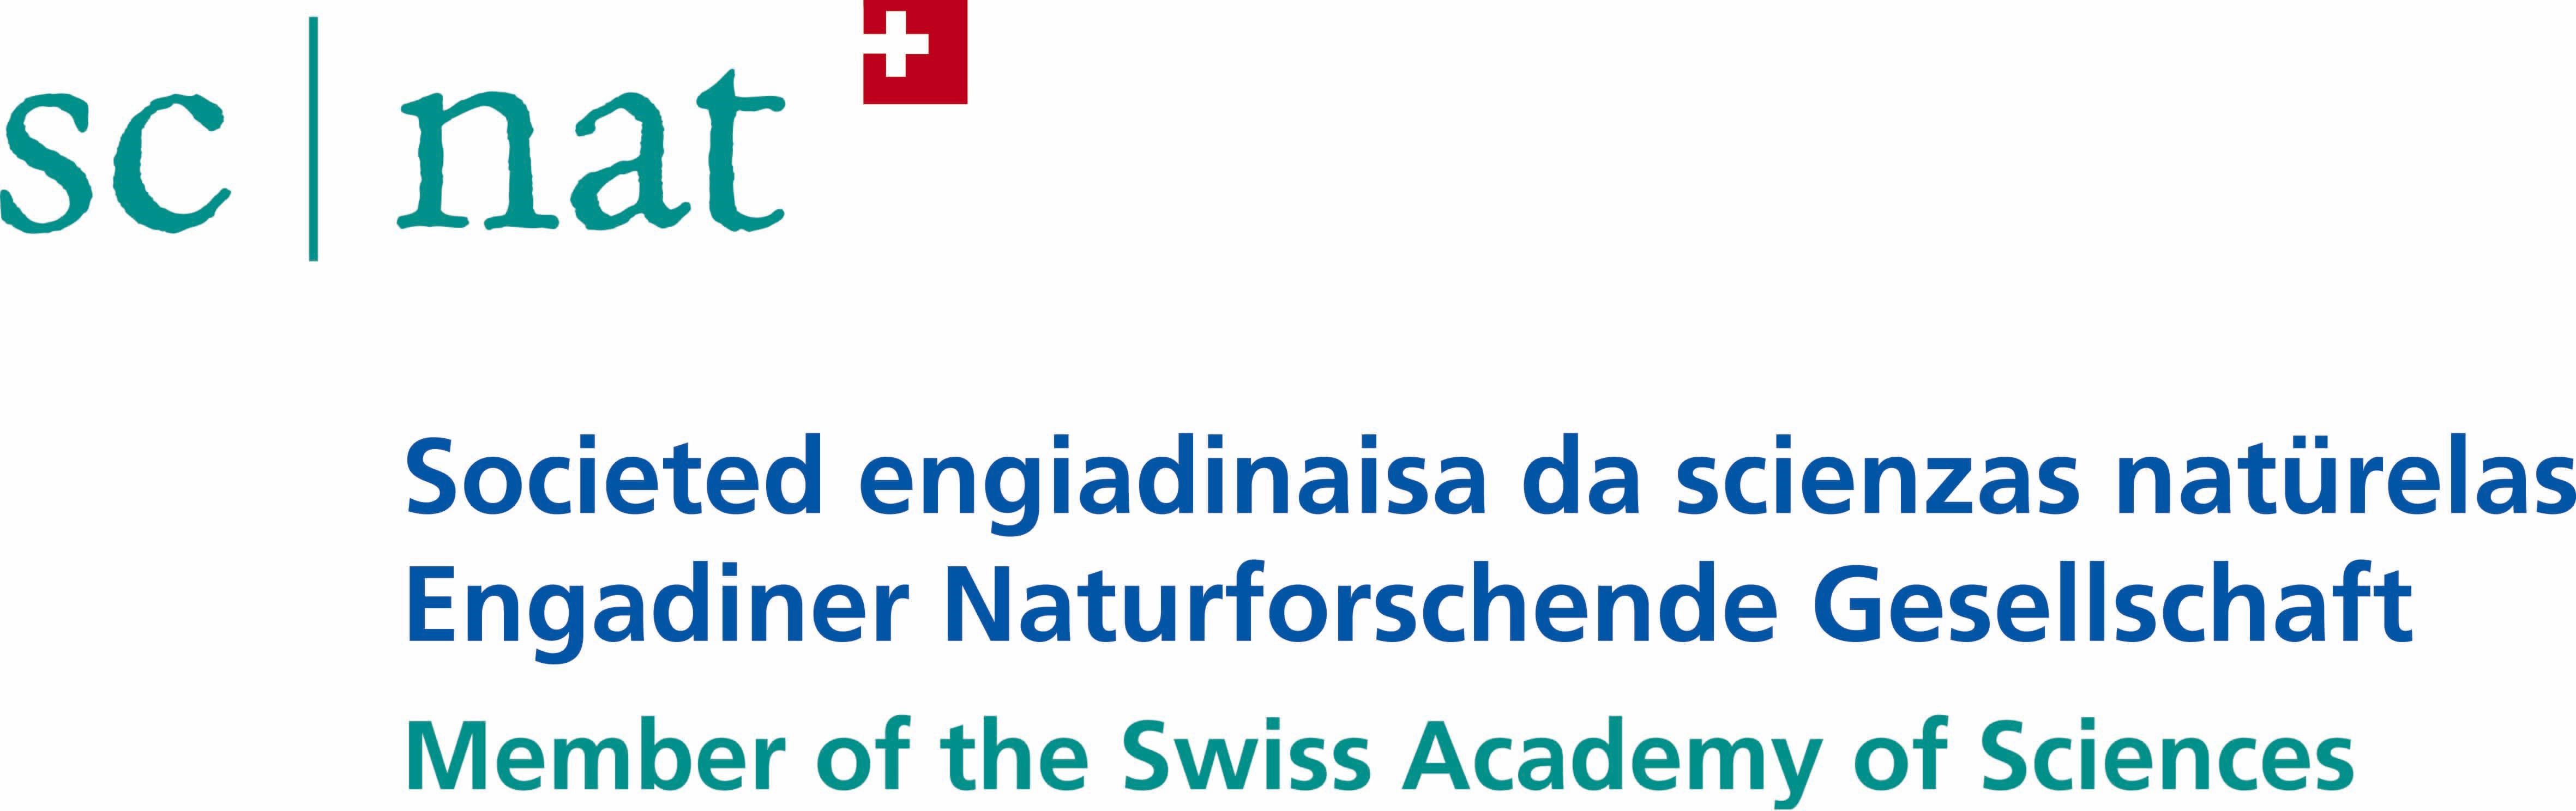 Logo - Engadiner Naturforschende Gesellschaft SESN